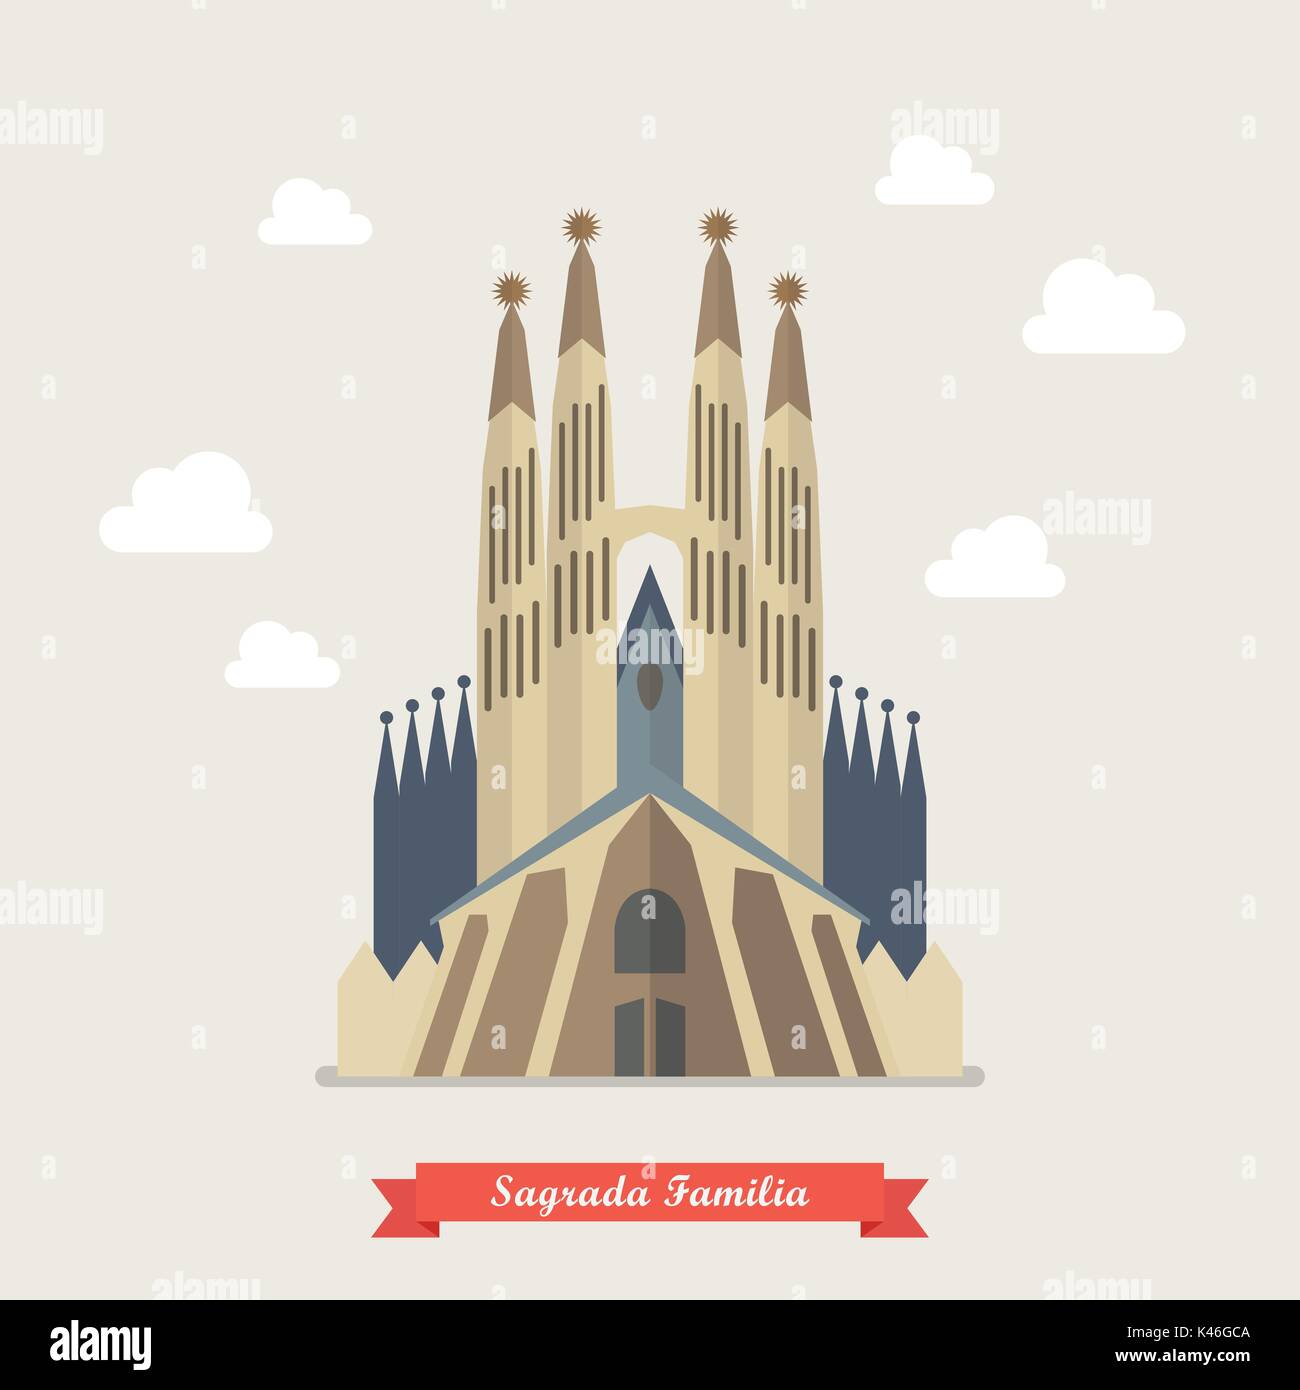 L'église catholique Sagrada Familia de Barcelone en Espagne. Style plat Vector illustration Illustration de Vecteur